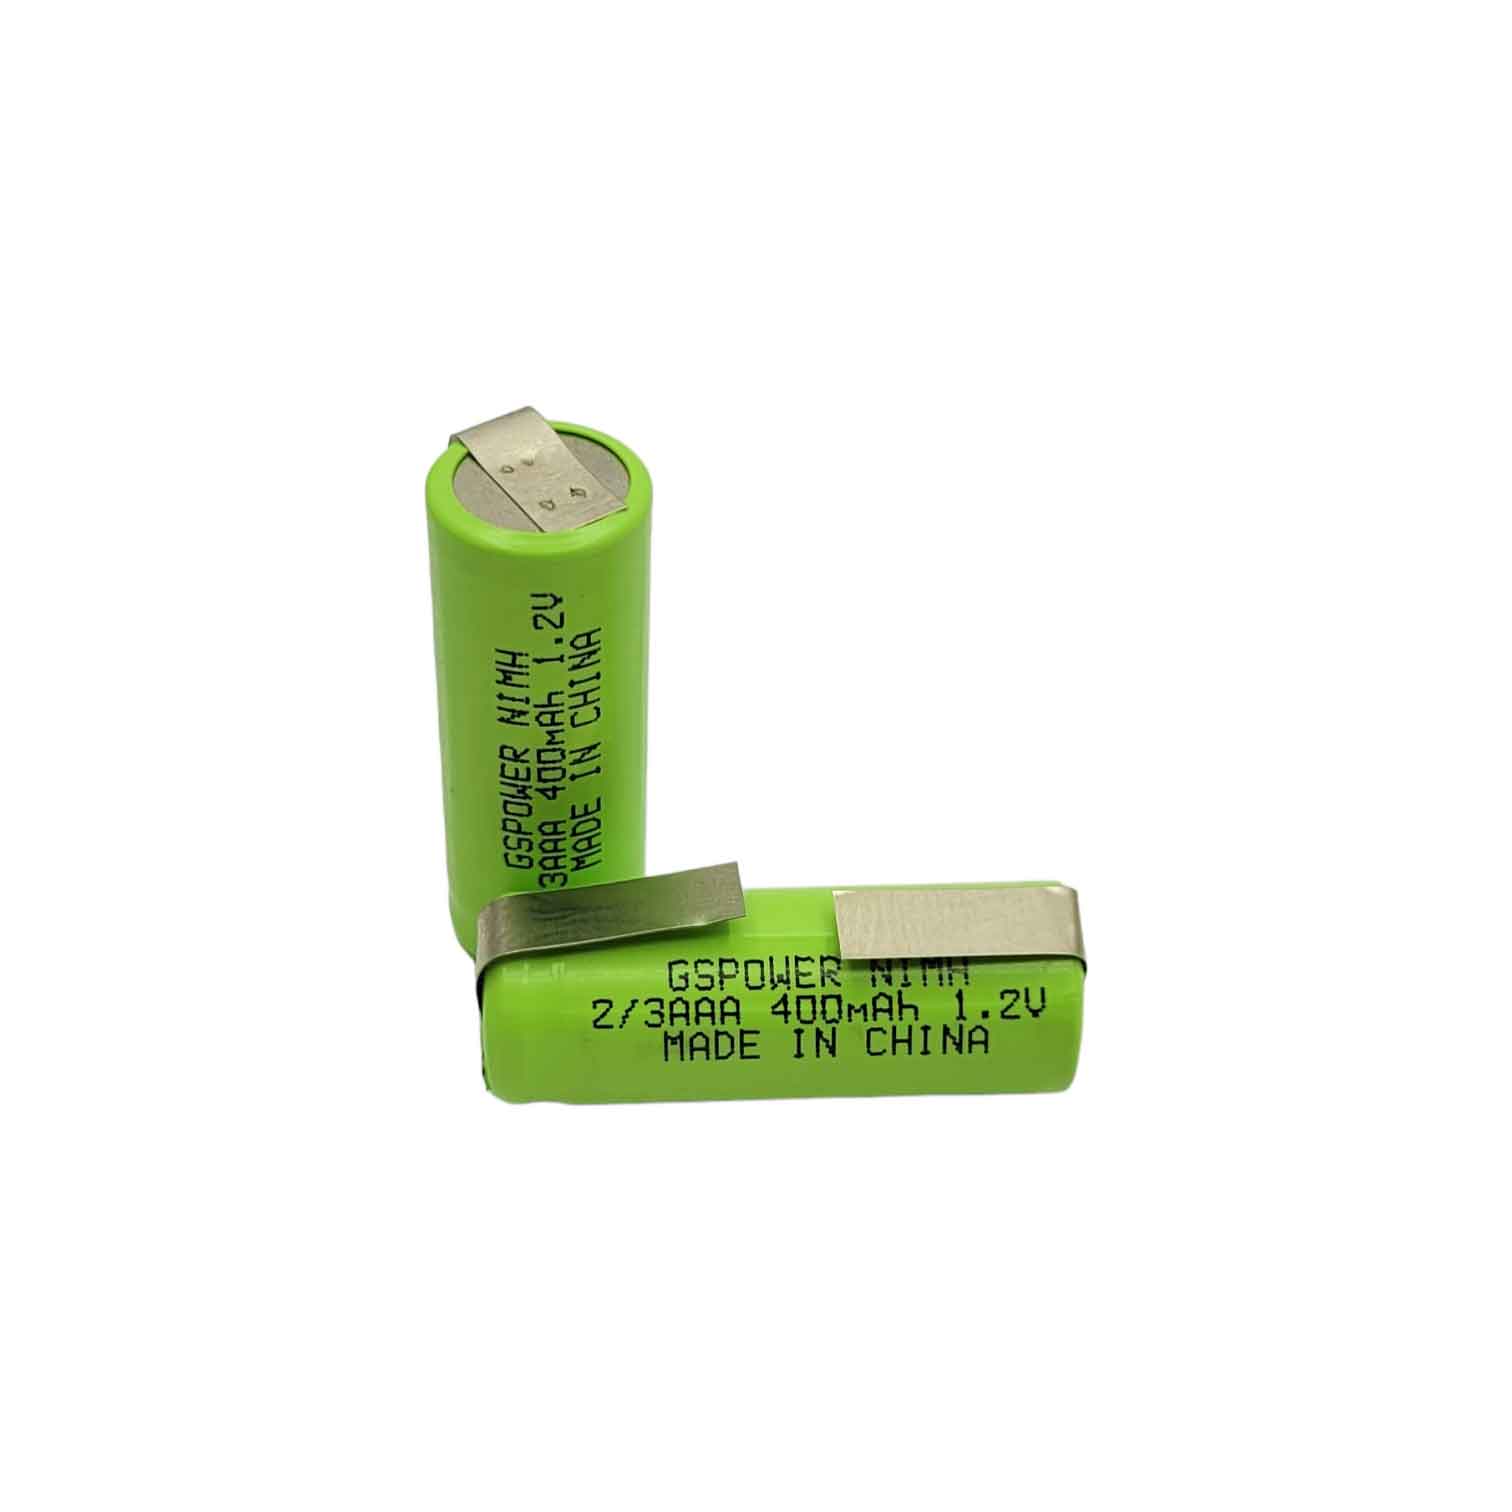 باتری نیم قلمی قابل شارژ جی اس پاور مدل 2/3AAA 400mAh بسته دو عددی